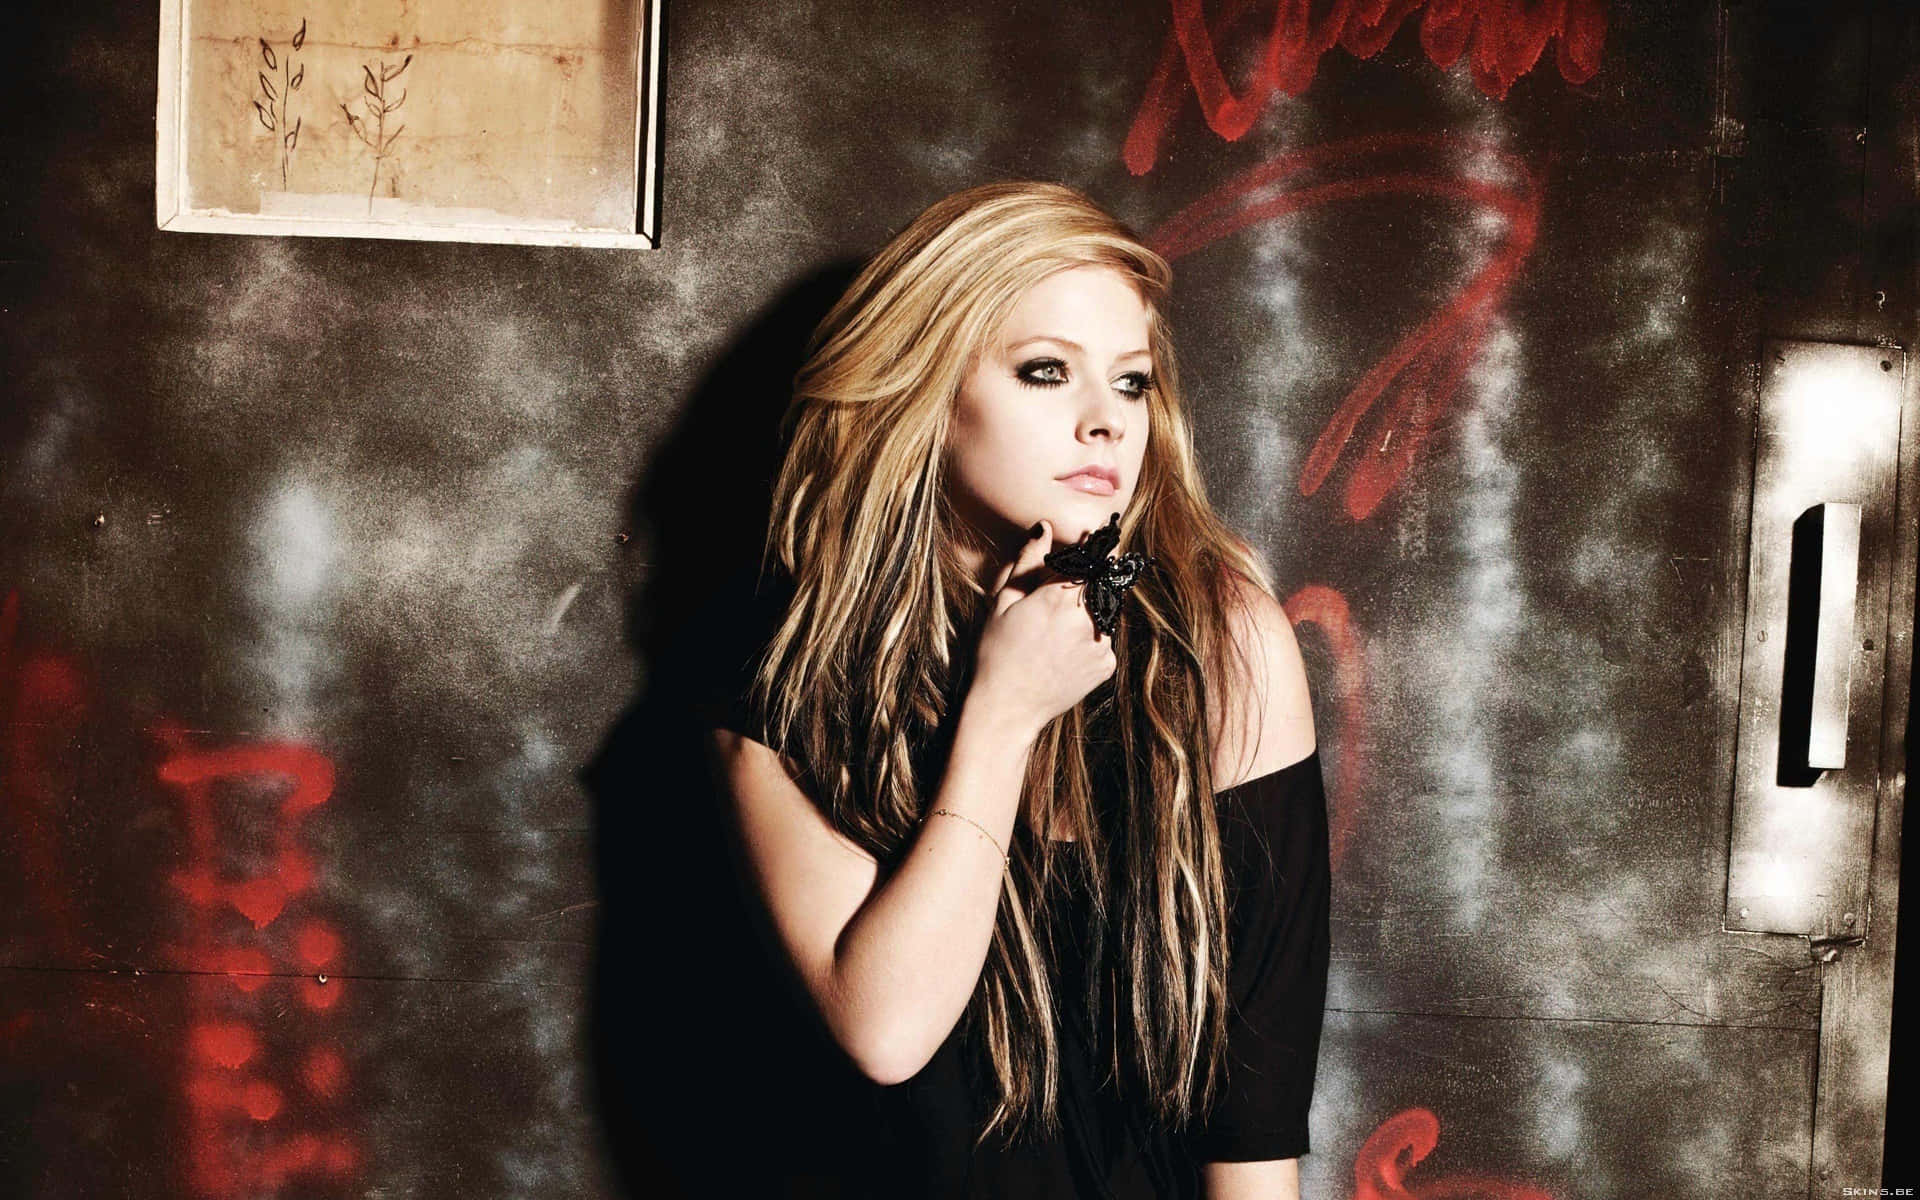 Avril Lavigne Shines in the Spotlight